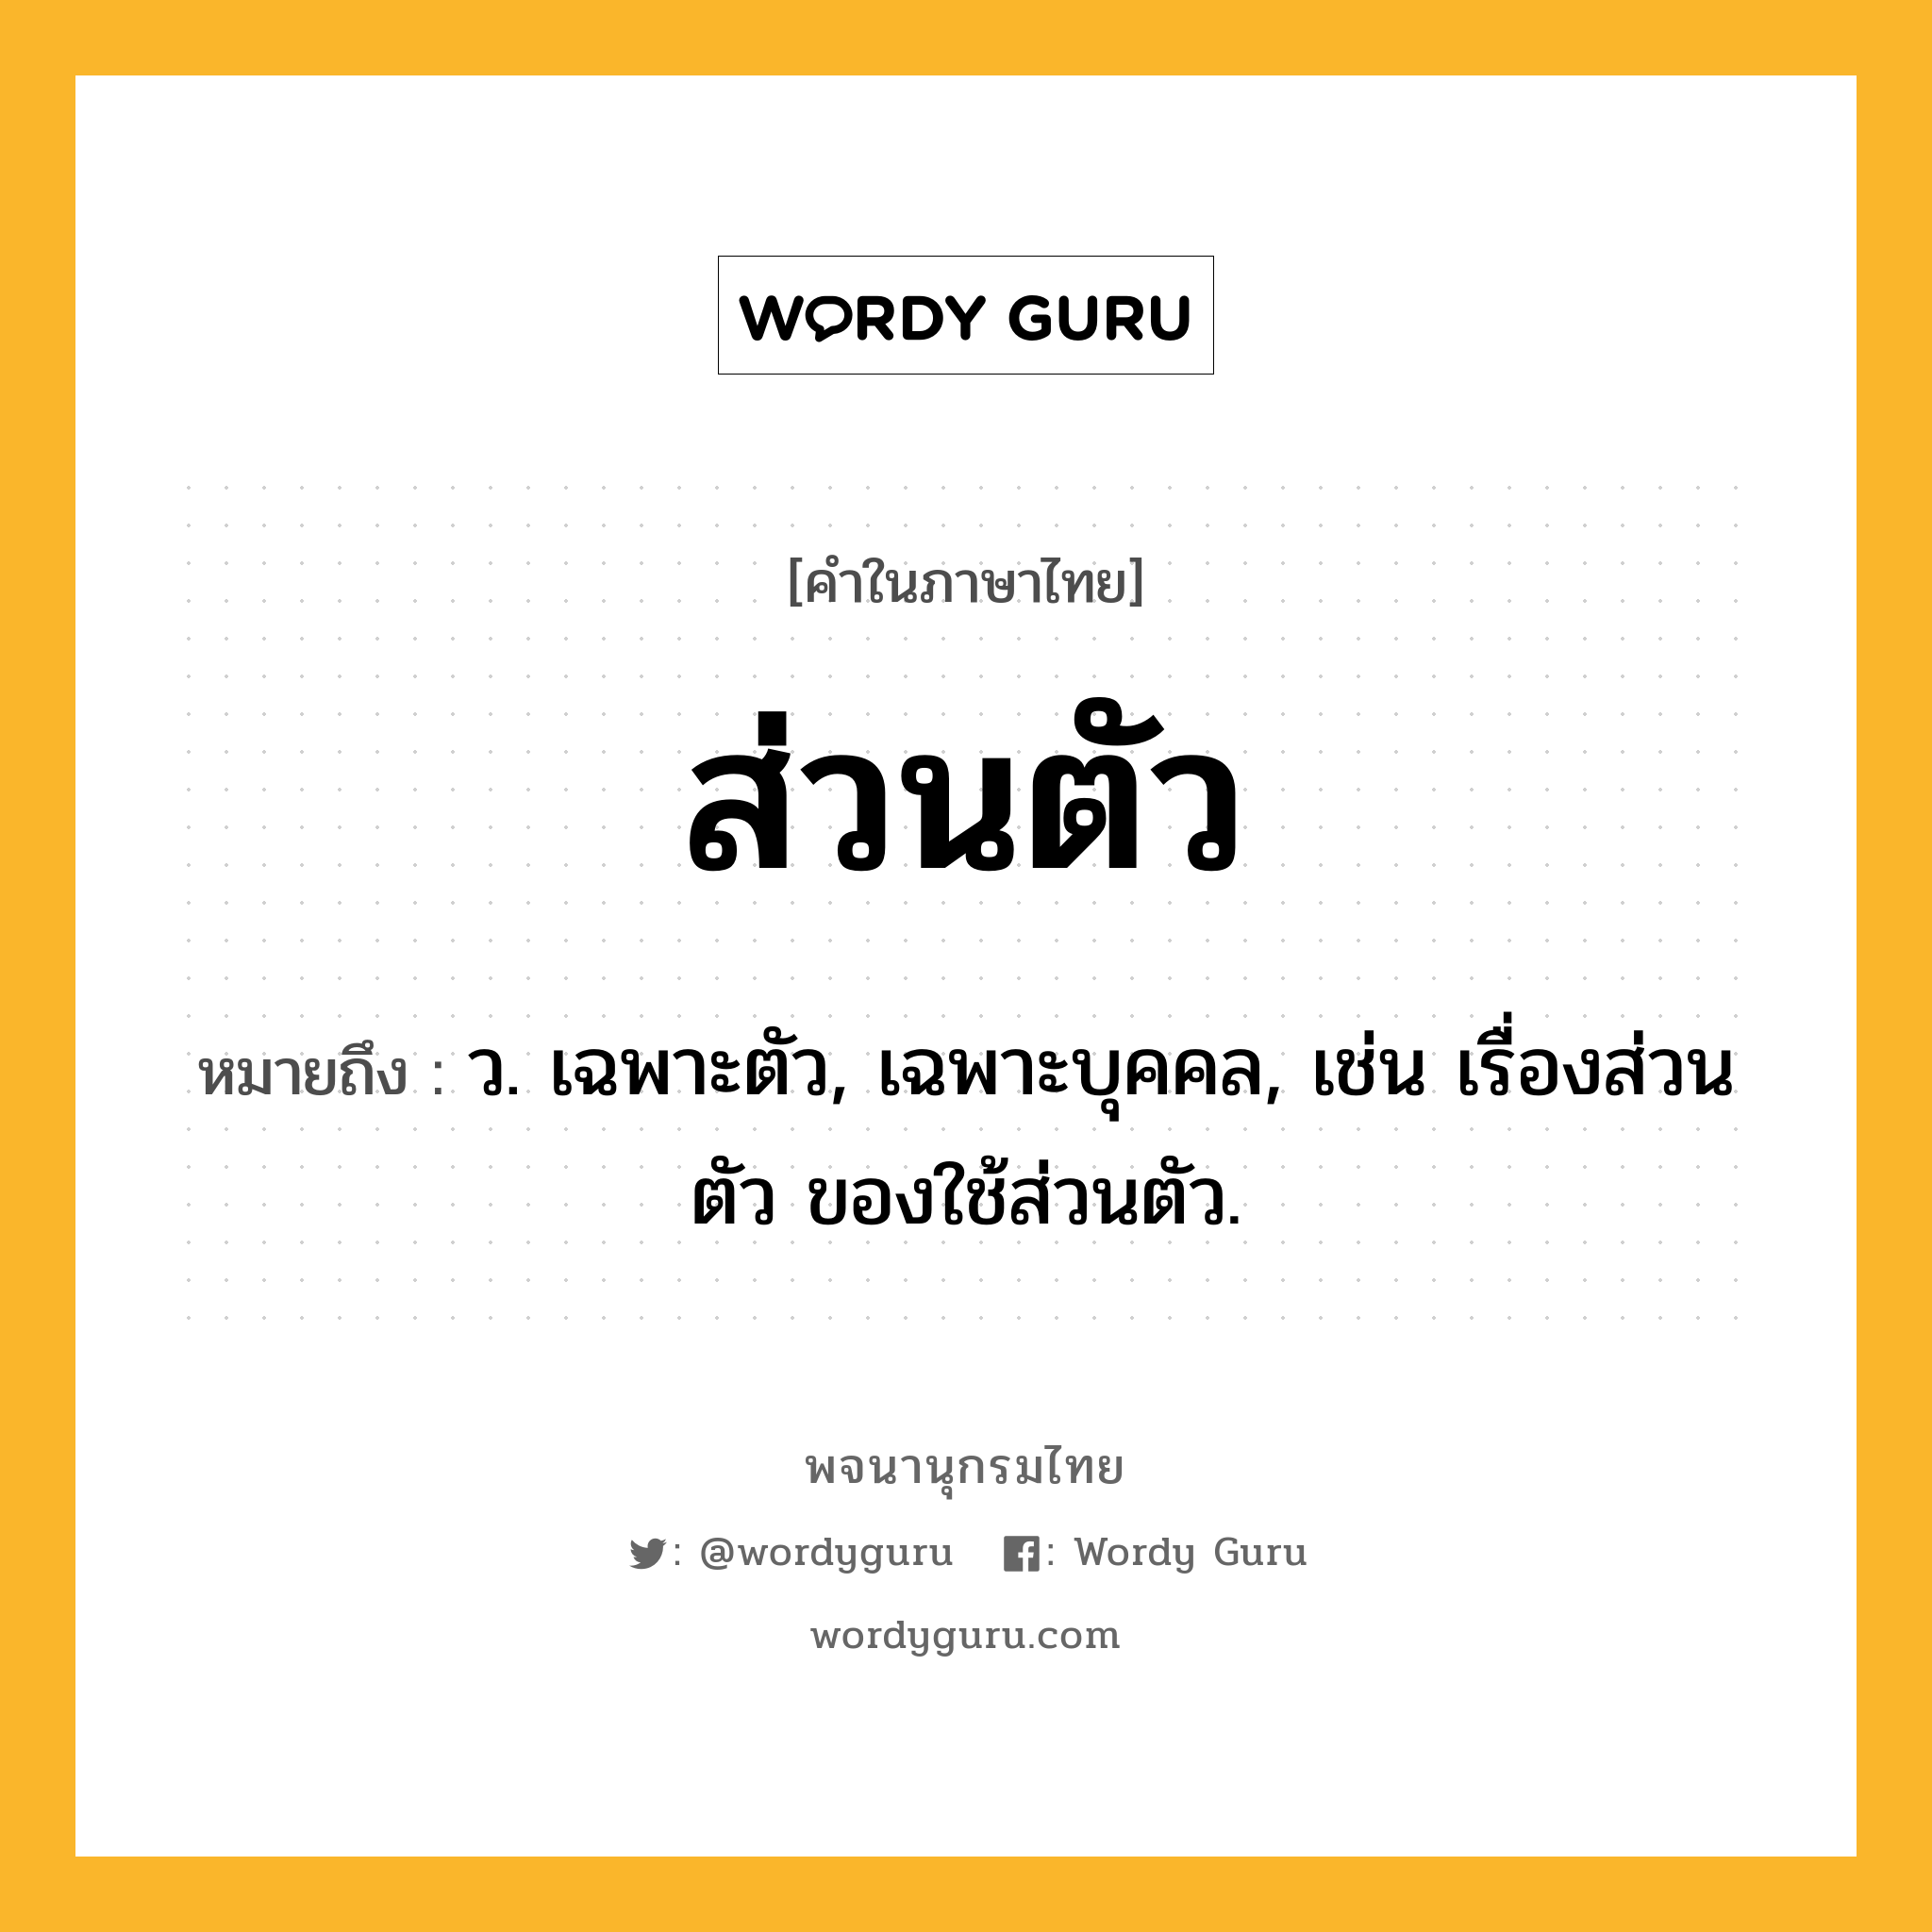 ส่วนตัว ความหมาย หมายถึงอะไร?, คำในภาษาไทย ส่วนตัว หมายถึง ว. เฉพาะตัว, เฉพาะบุคคล, เช่น เรื่องส่วนตัว ของใช้ส่วนตัว.